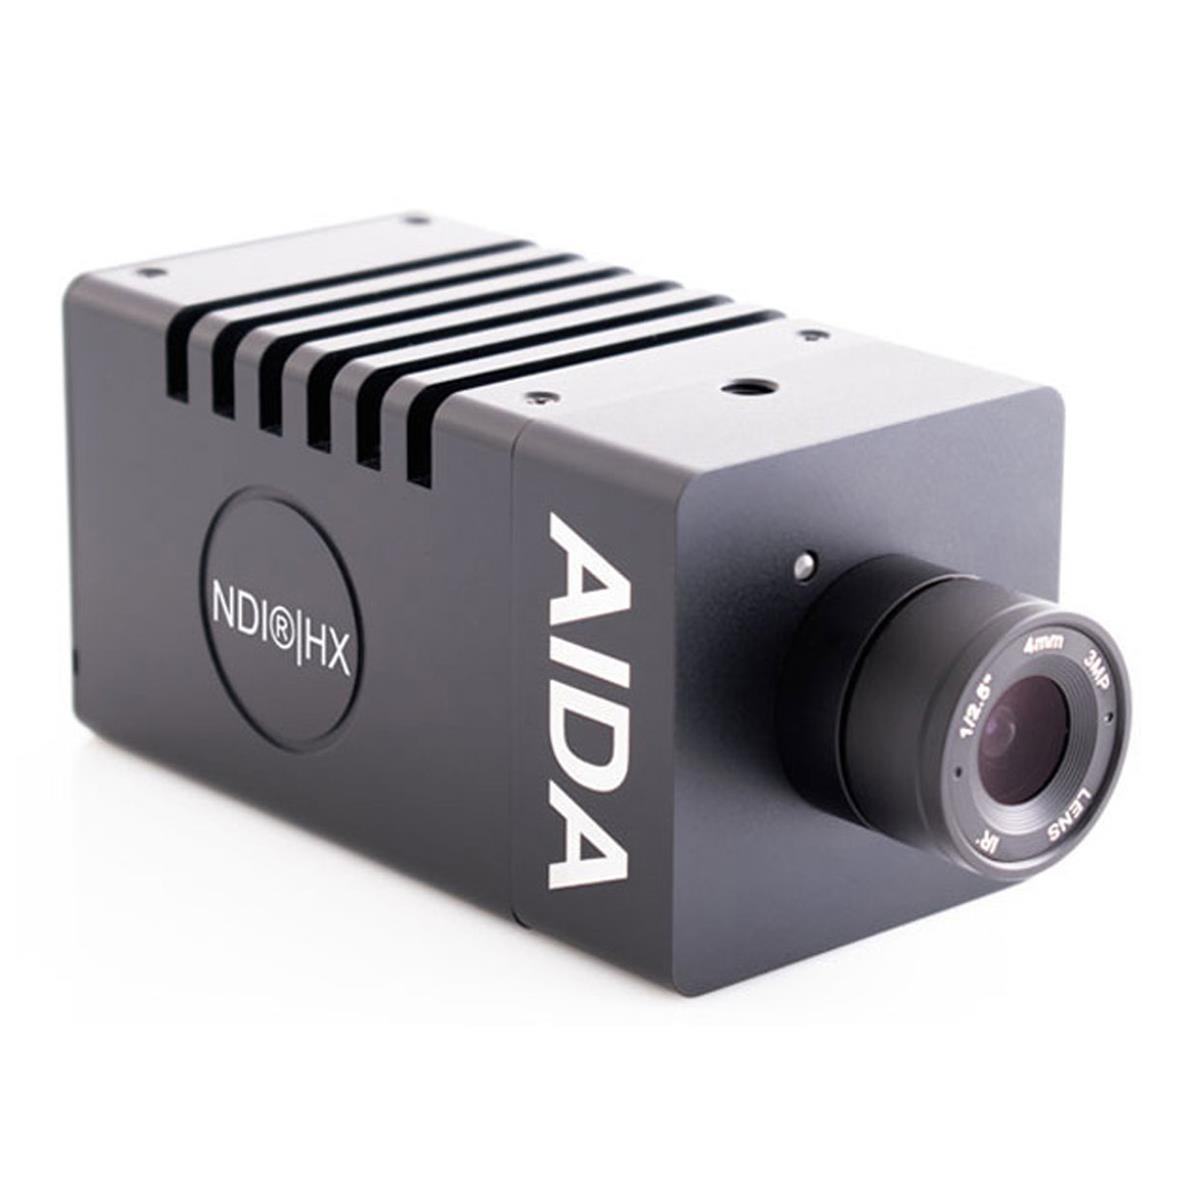 Image of AIDA HD-NDI-200 Full HD NDI|HX2 HDMI POV Camera